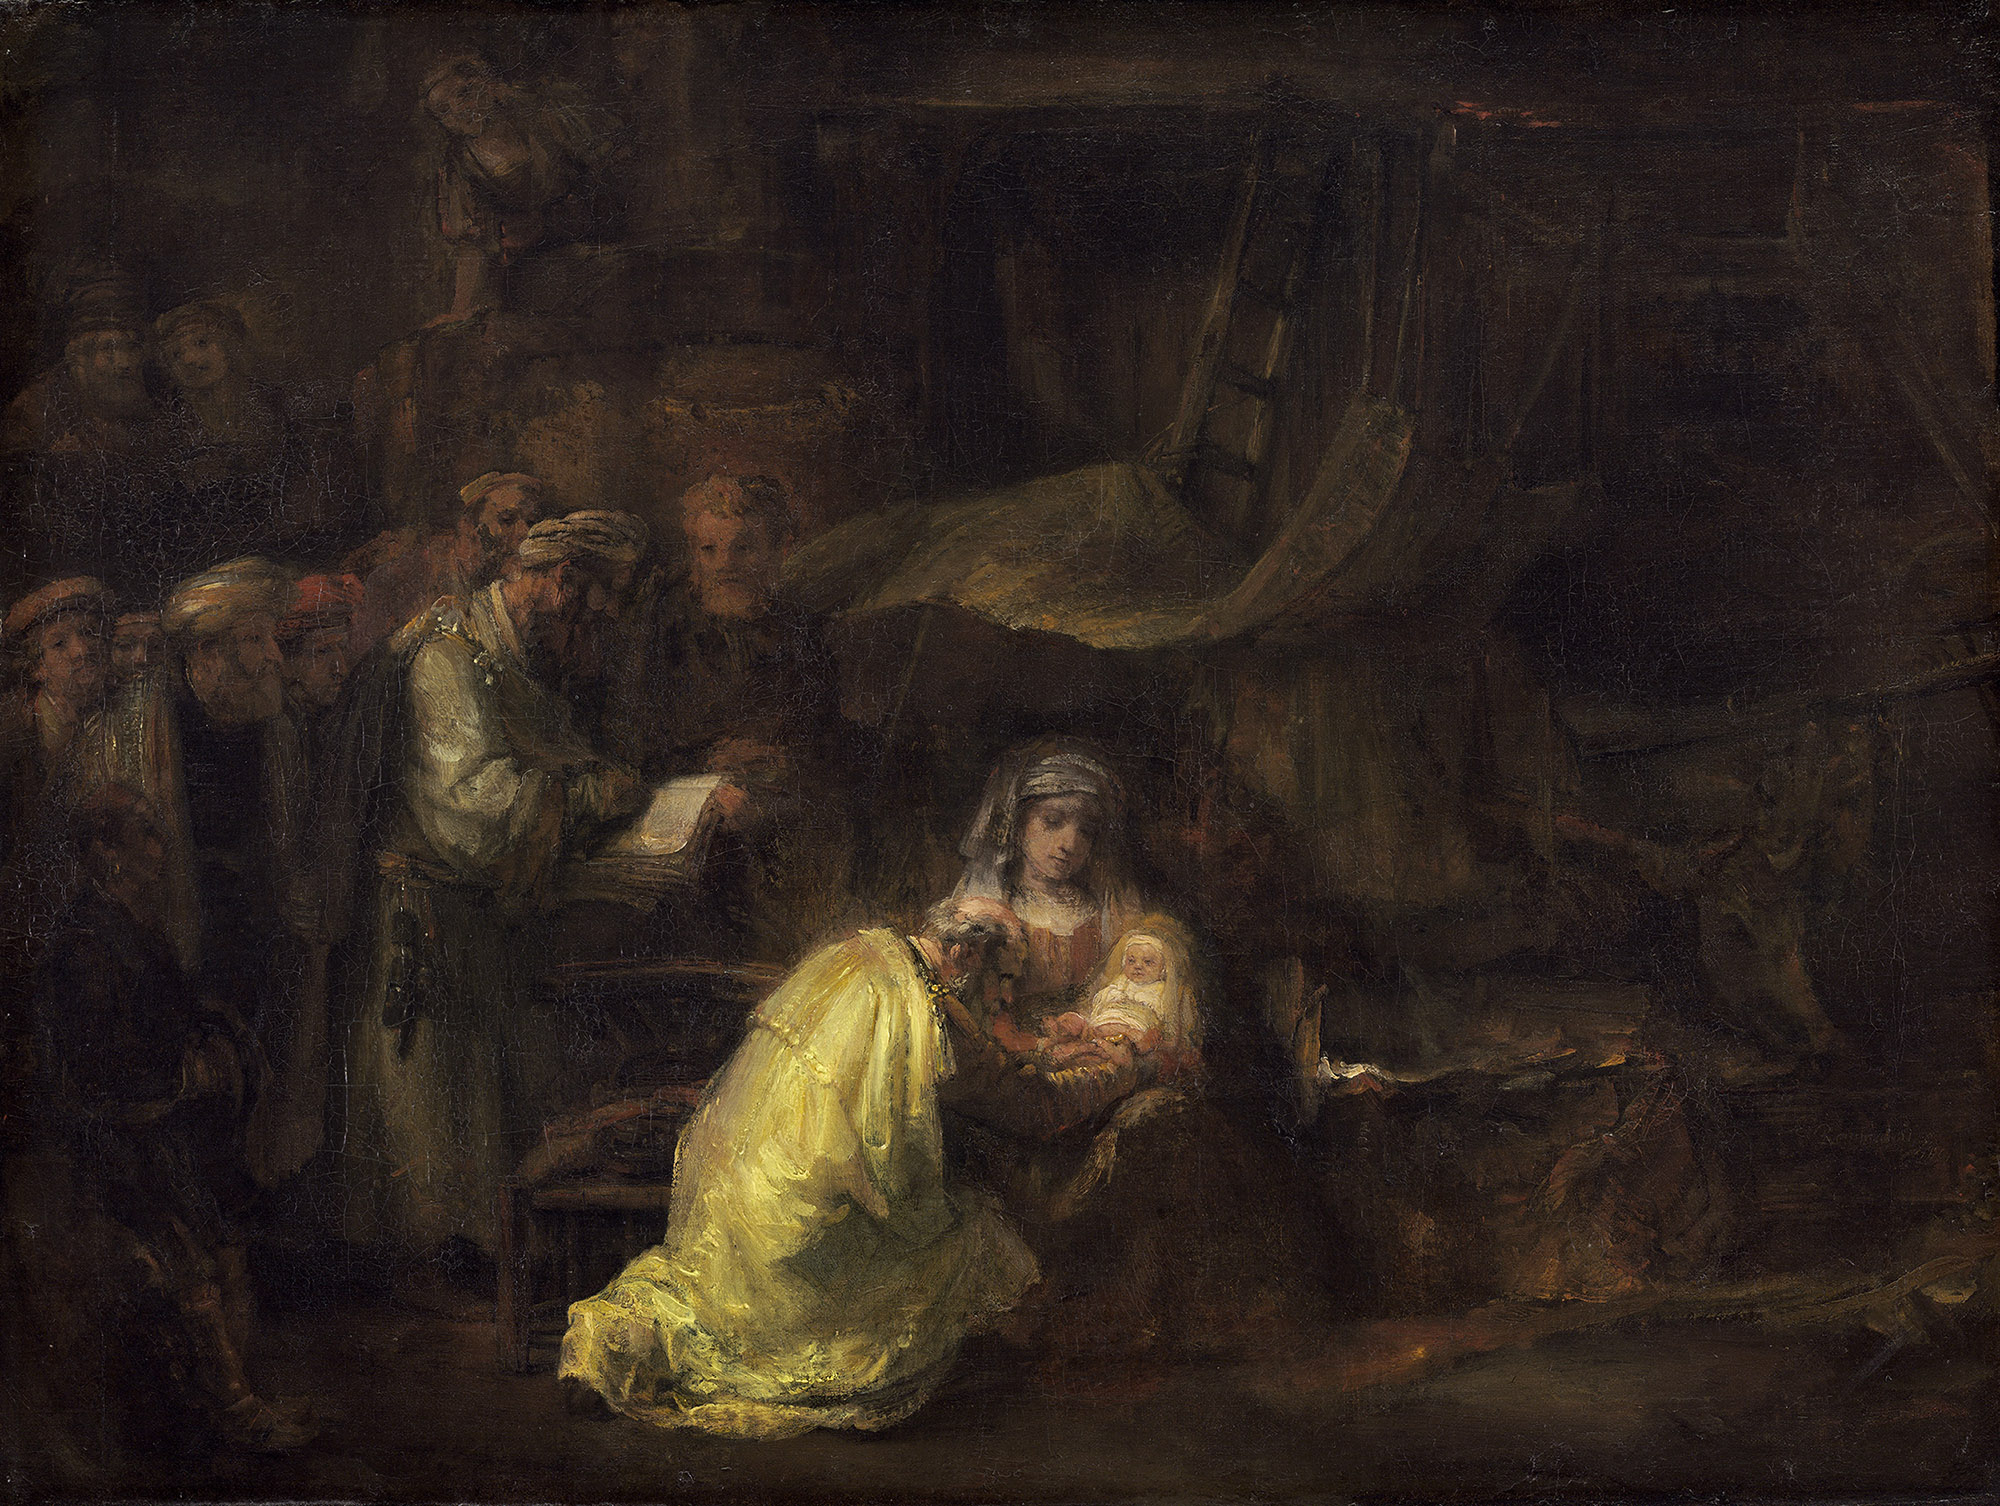 Рембрандт Харменс ван Рейн. "Обрезание". 1661. Национальная галерея, Вашингтон.